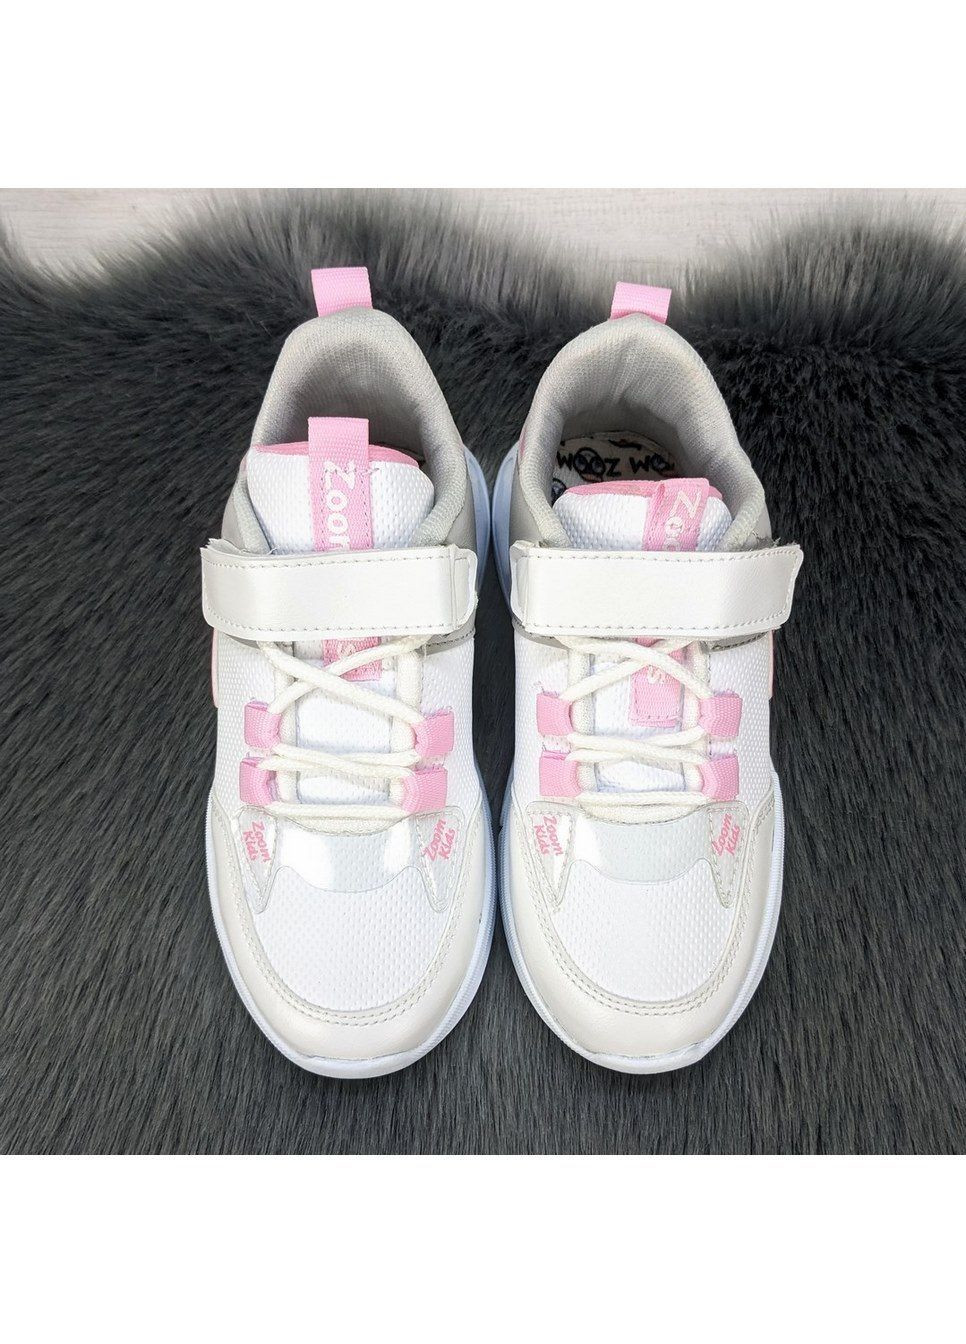 Белые демисезонные кроссовки детские для девочки Zoom